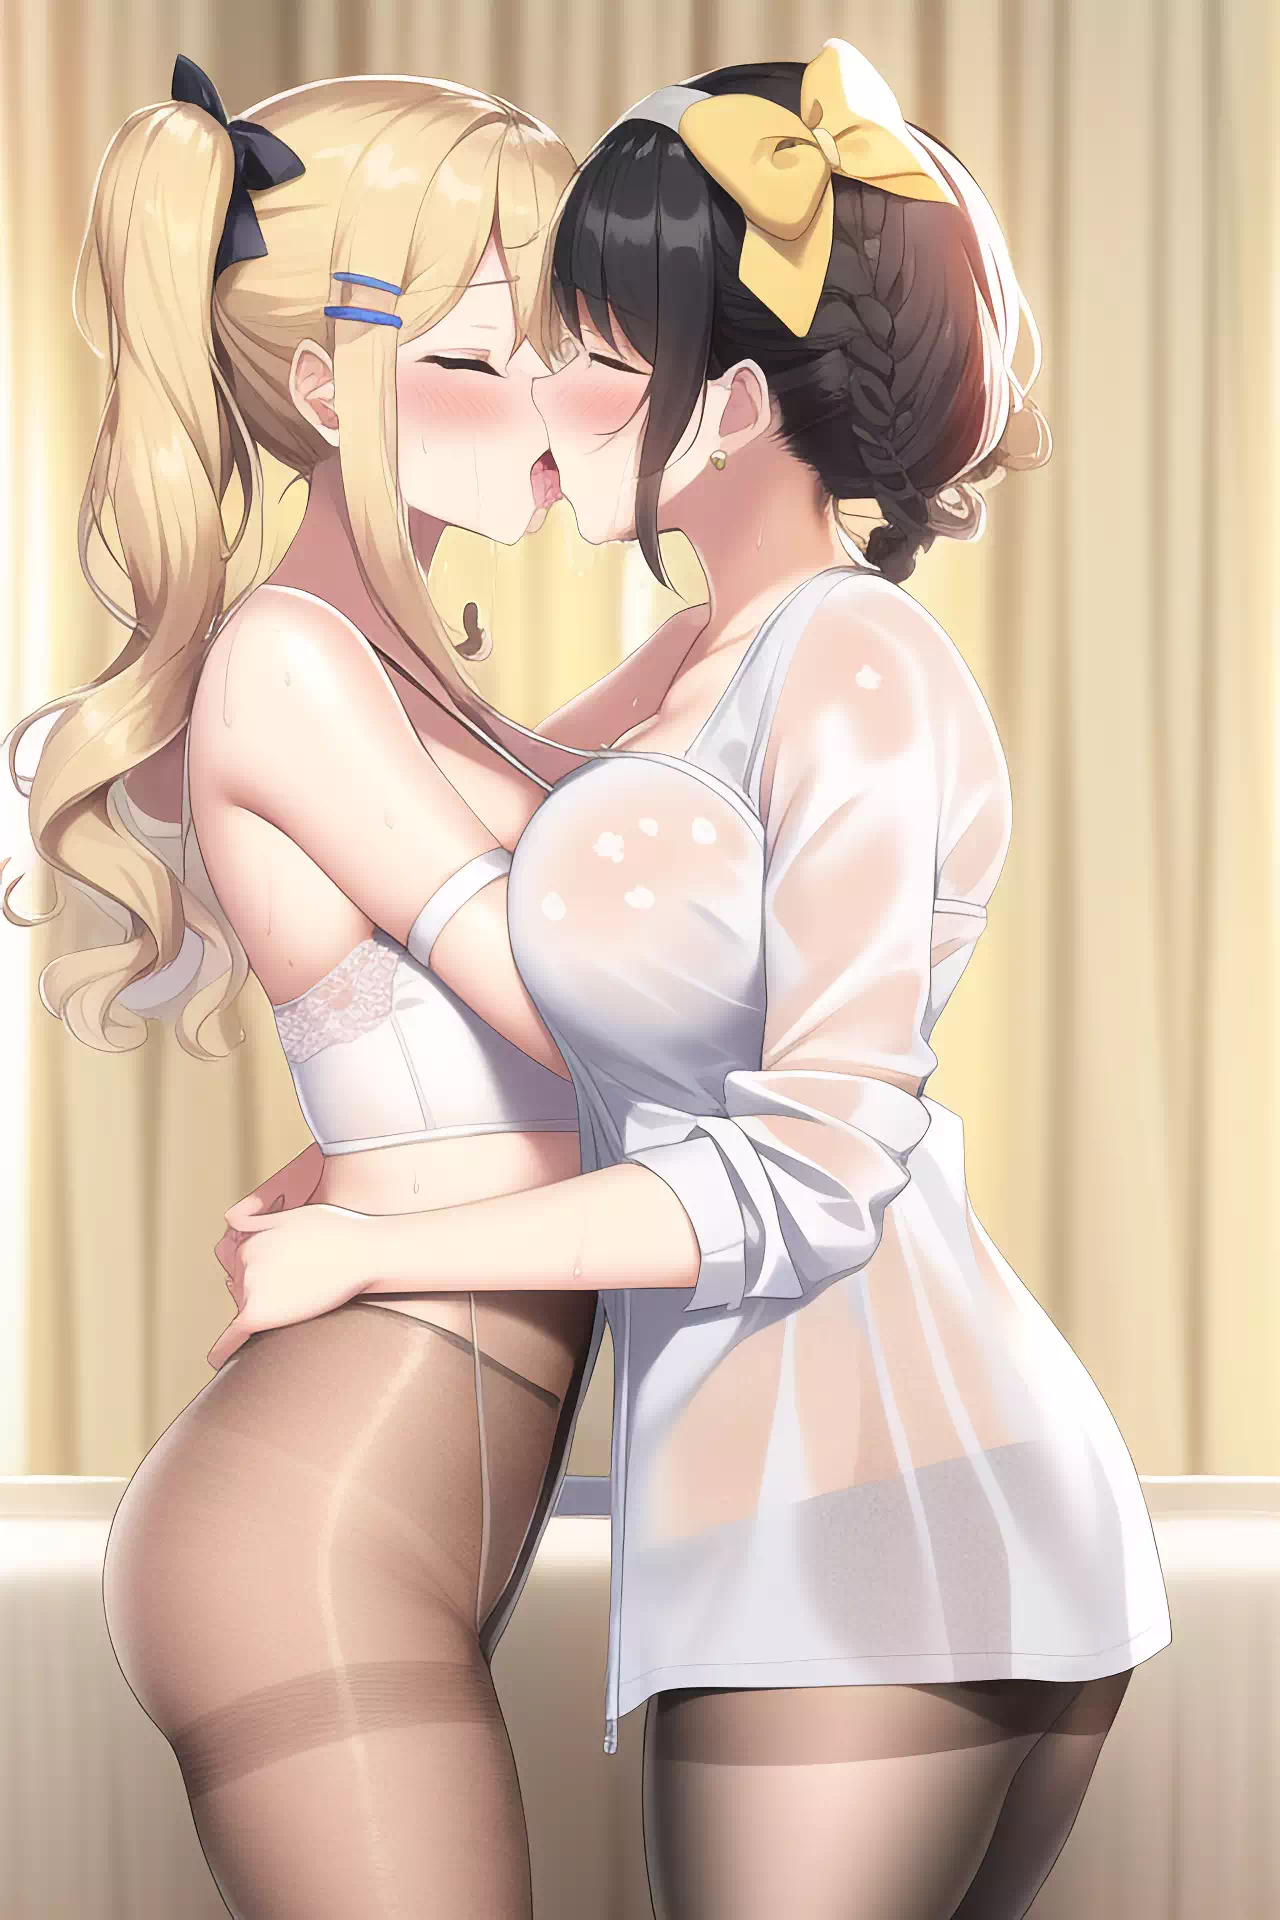 yuri kissing